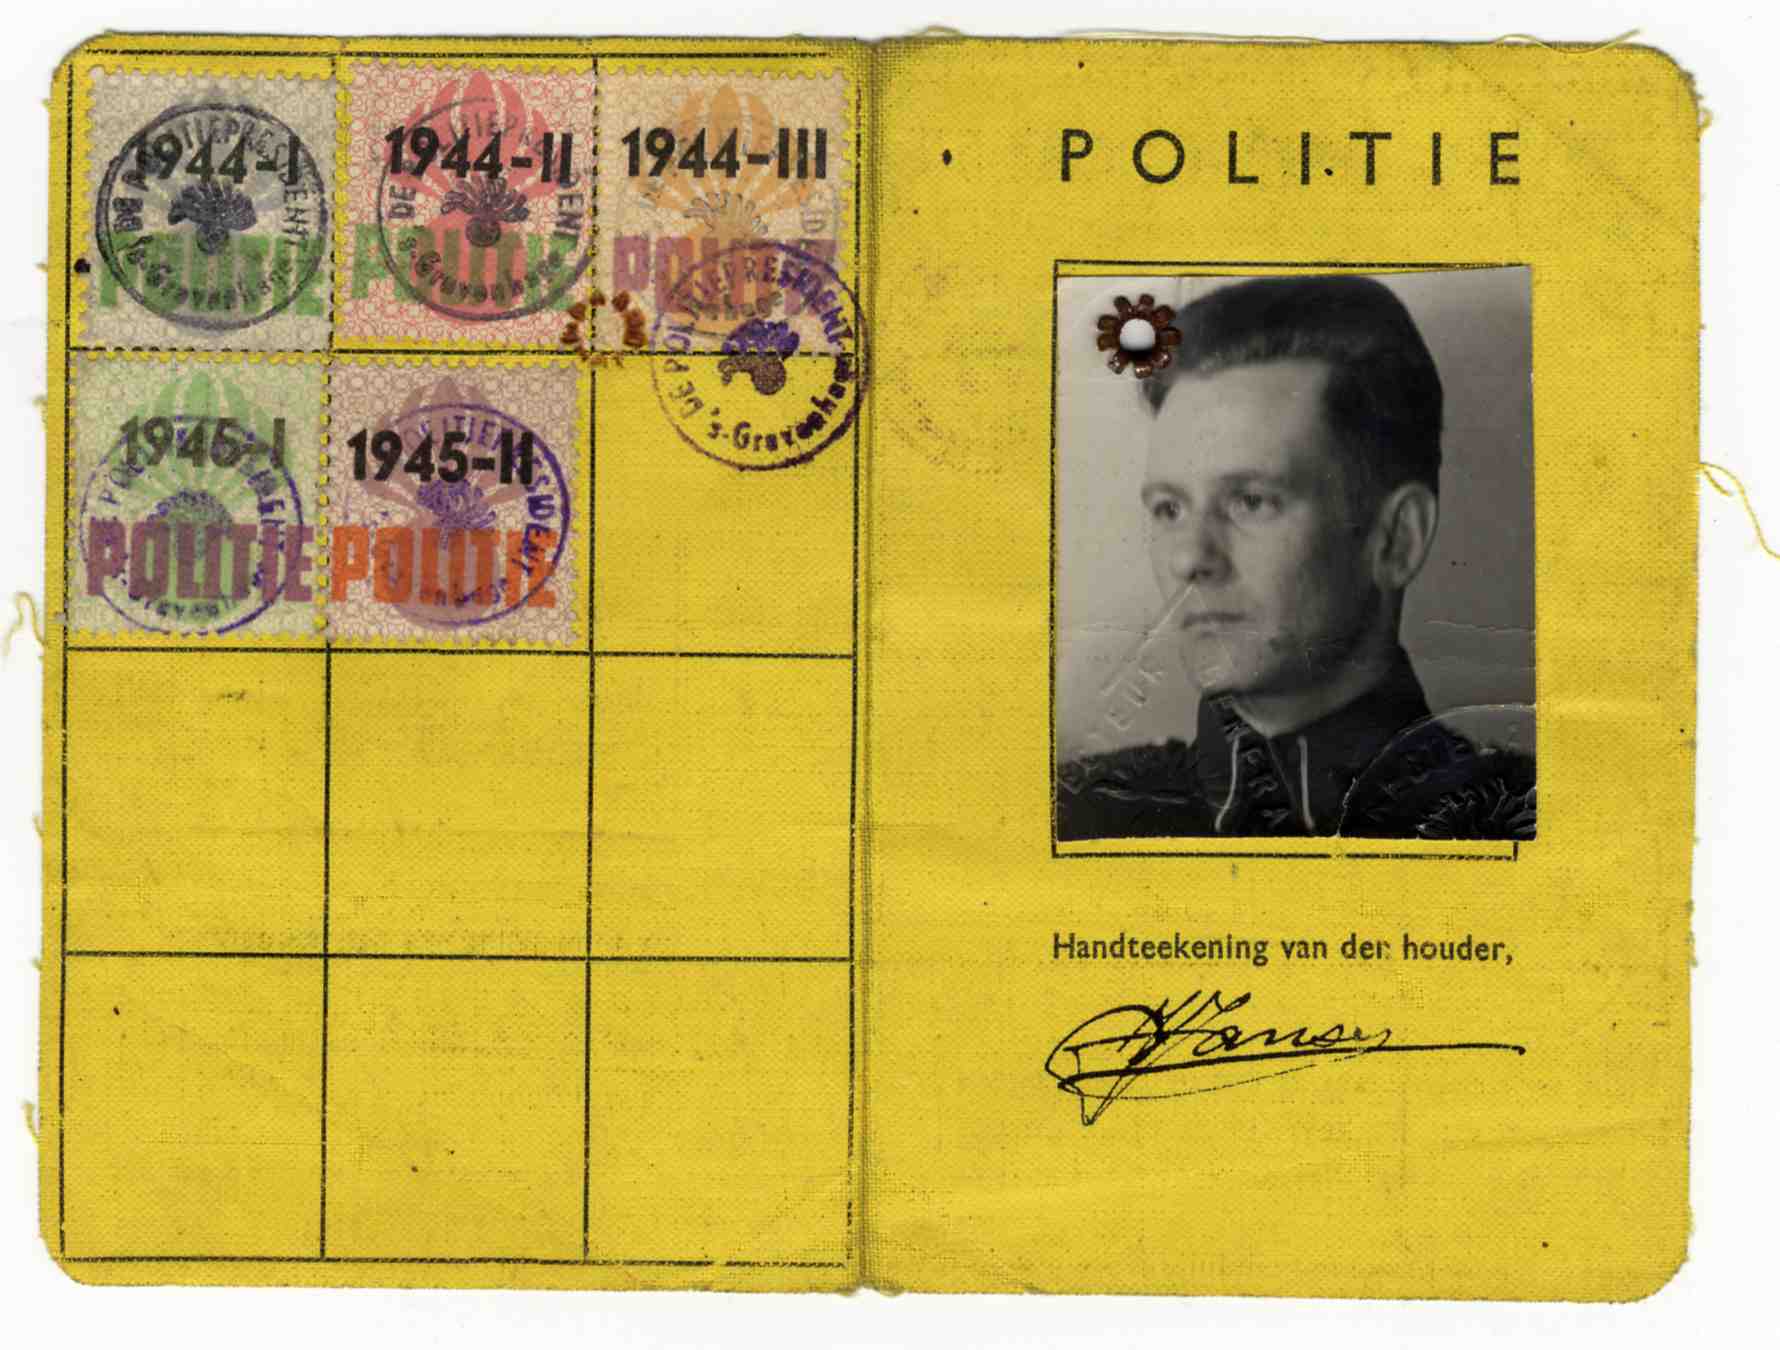 34. De Nederlandse politie in WOII (1943-1945)